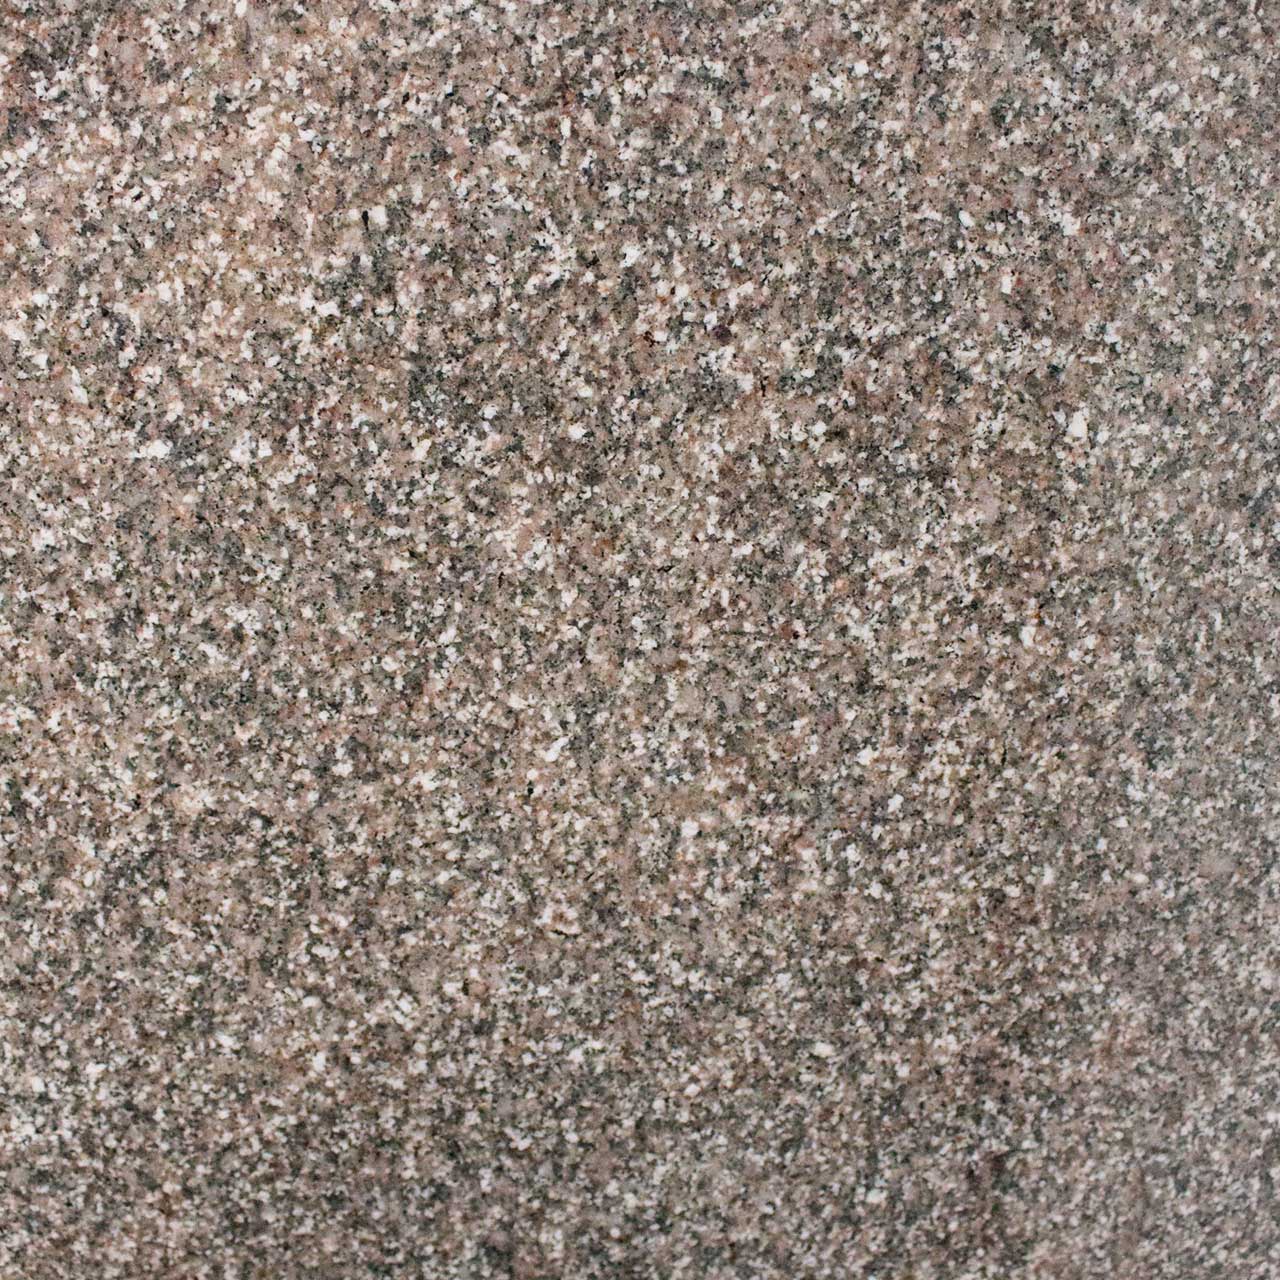 granites